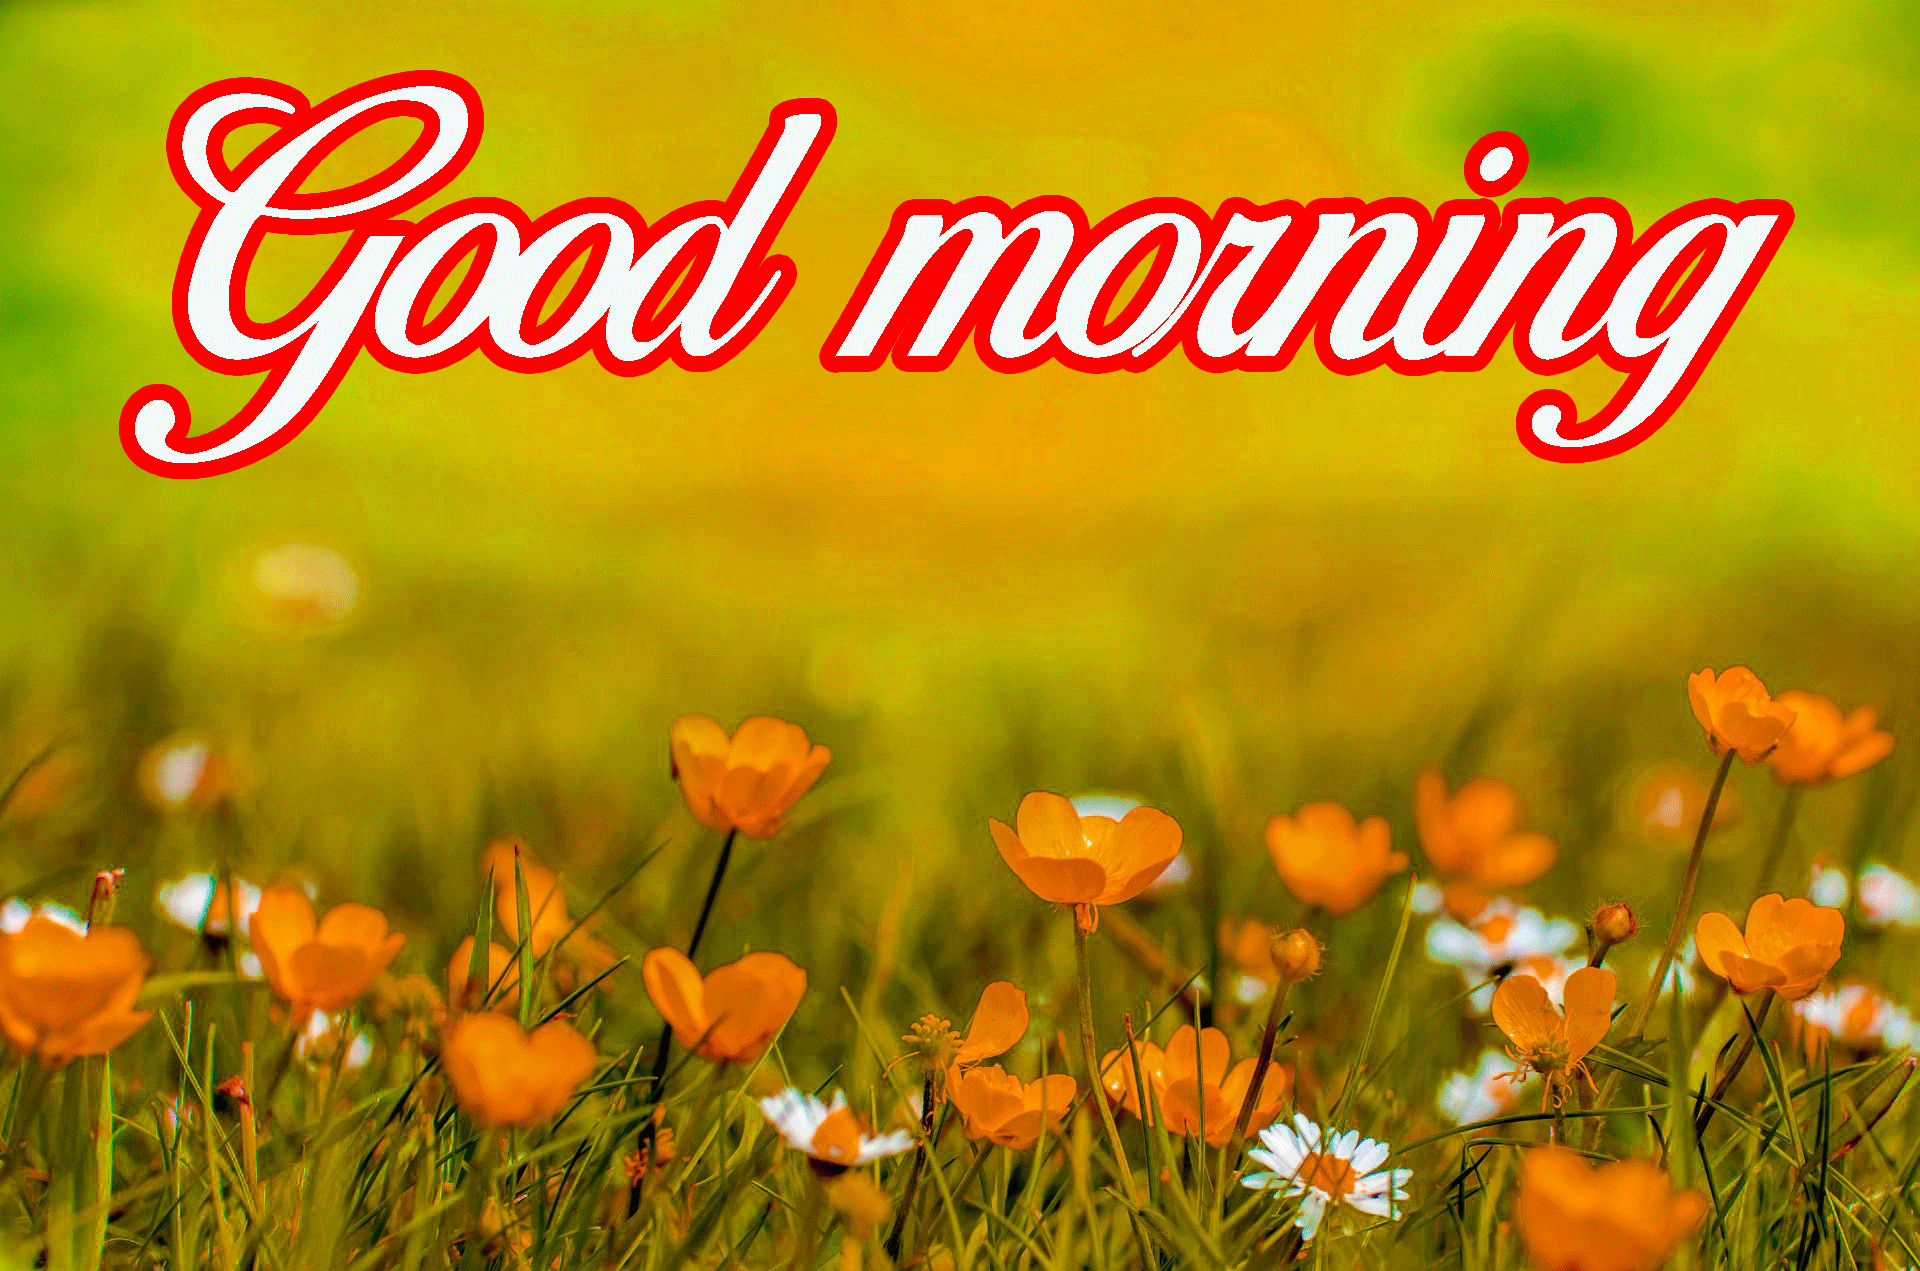 Really good morning. Весенний good morning. Good morning Spring картинки. Good morning открытки красивые. Обои на рабочий стол good morning.